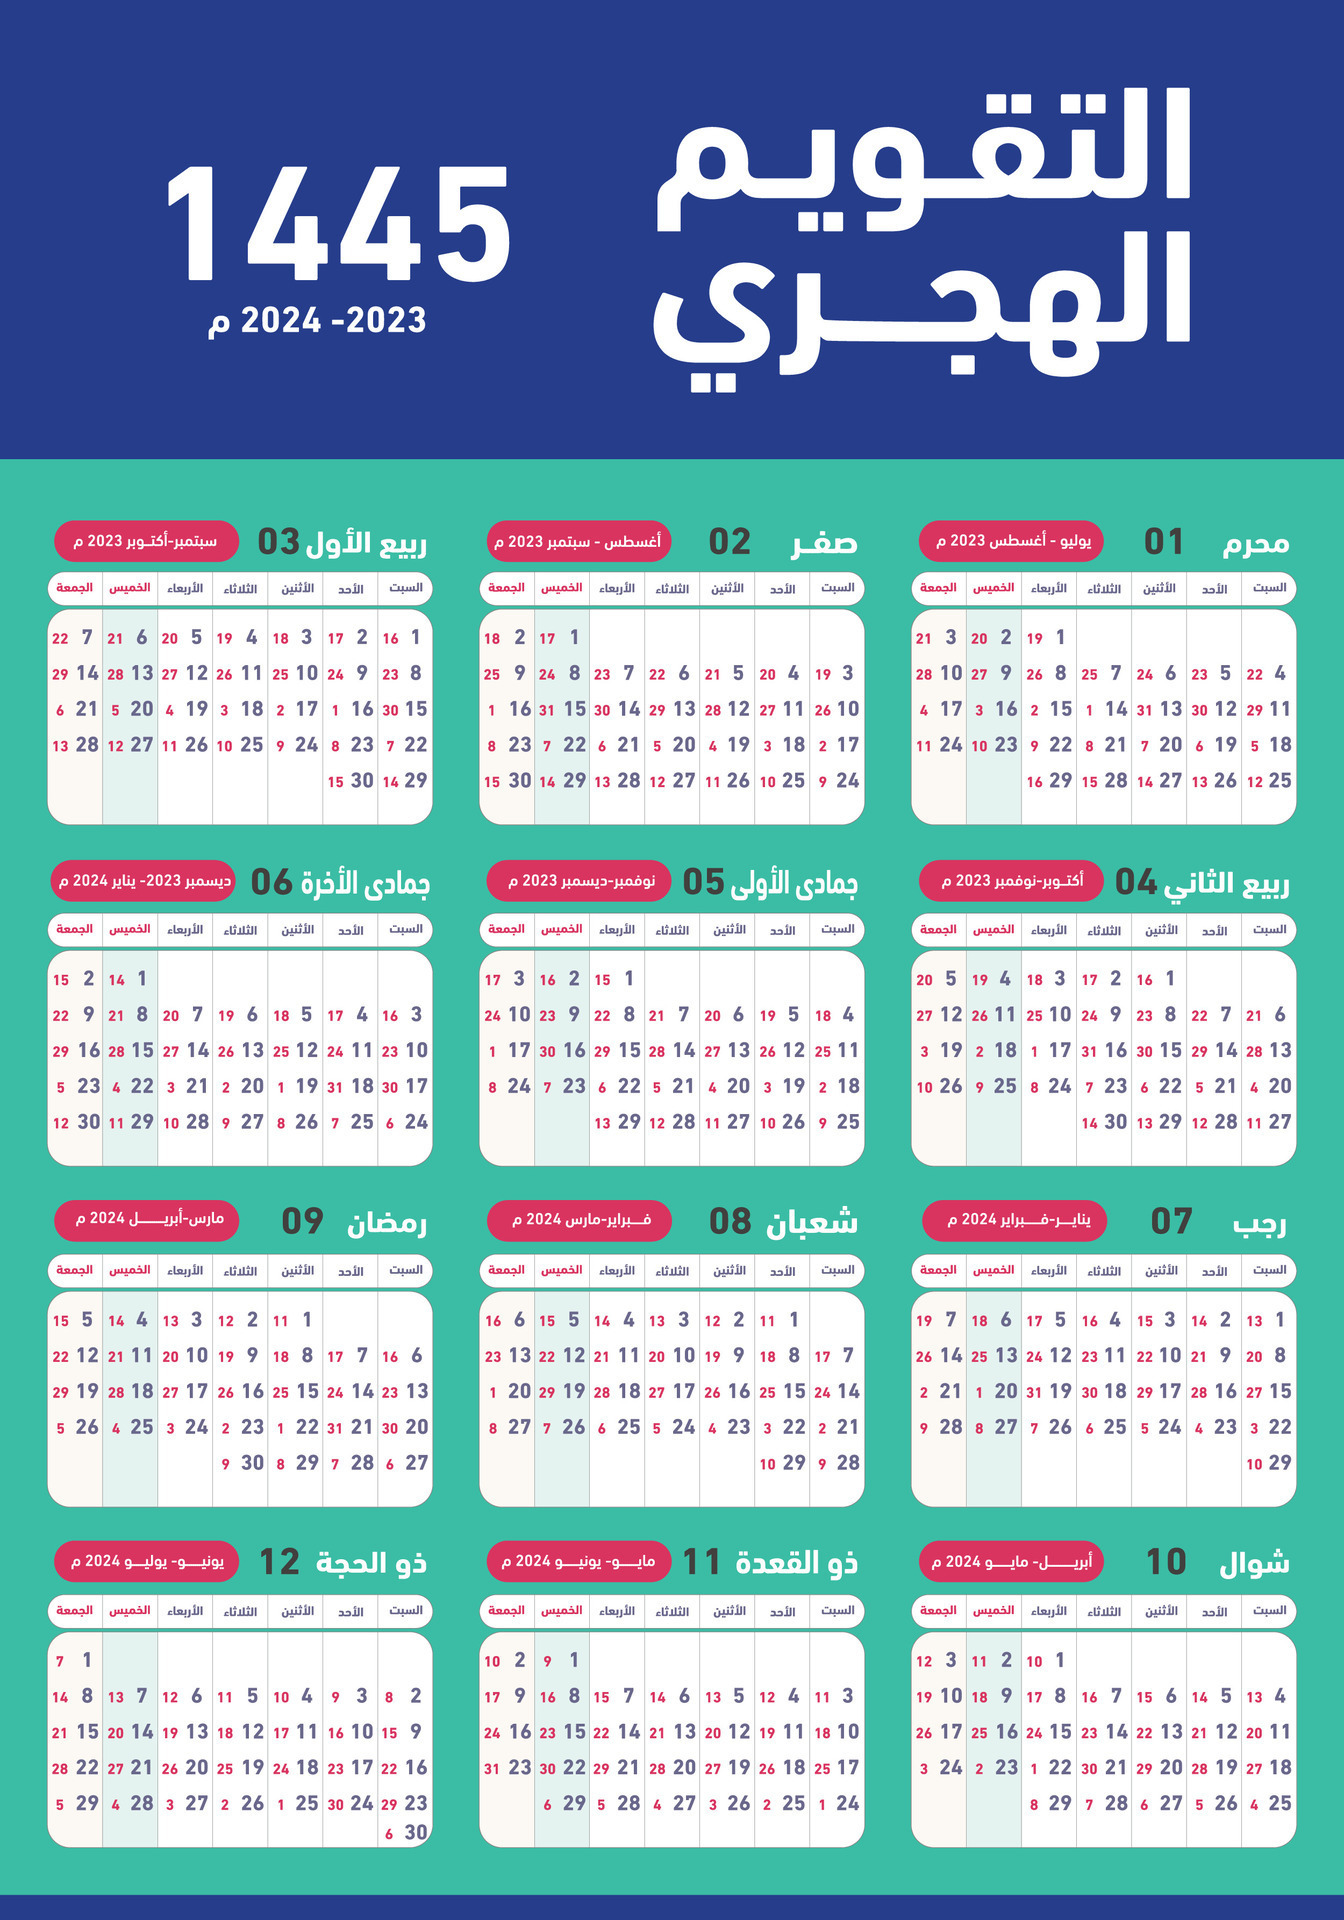 hijri islámico y gregoriano calendario 2023. desde 1444 a 1445 vector